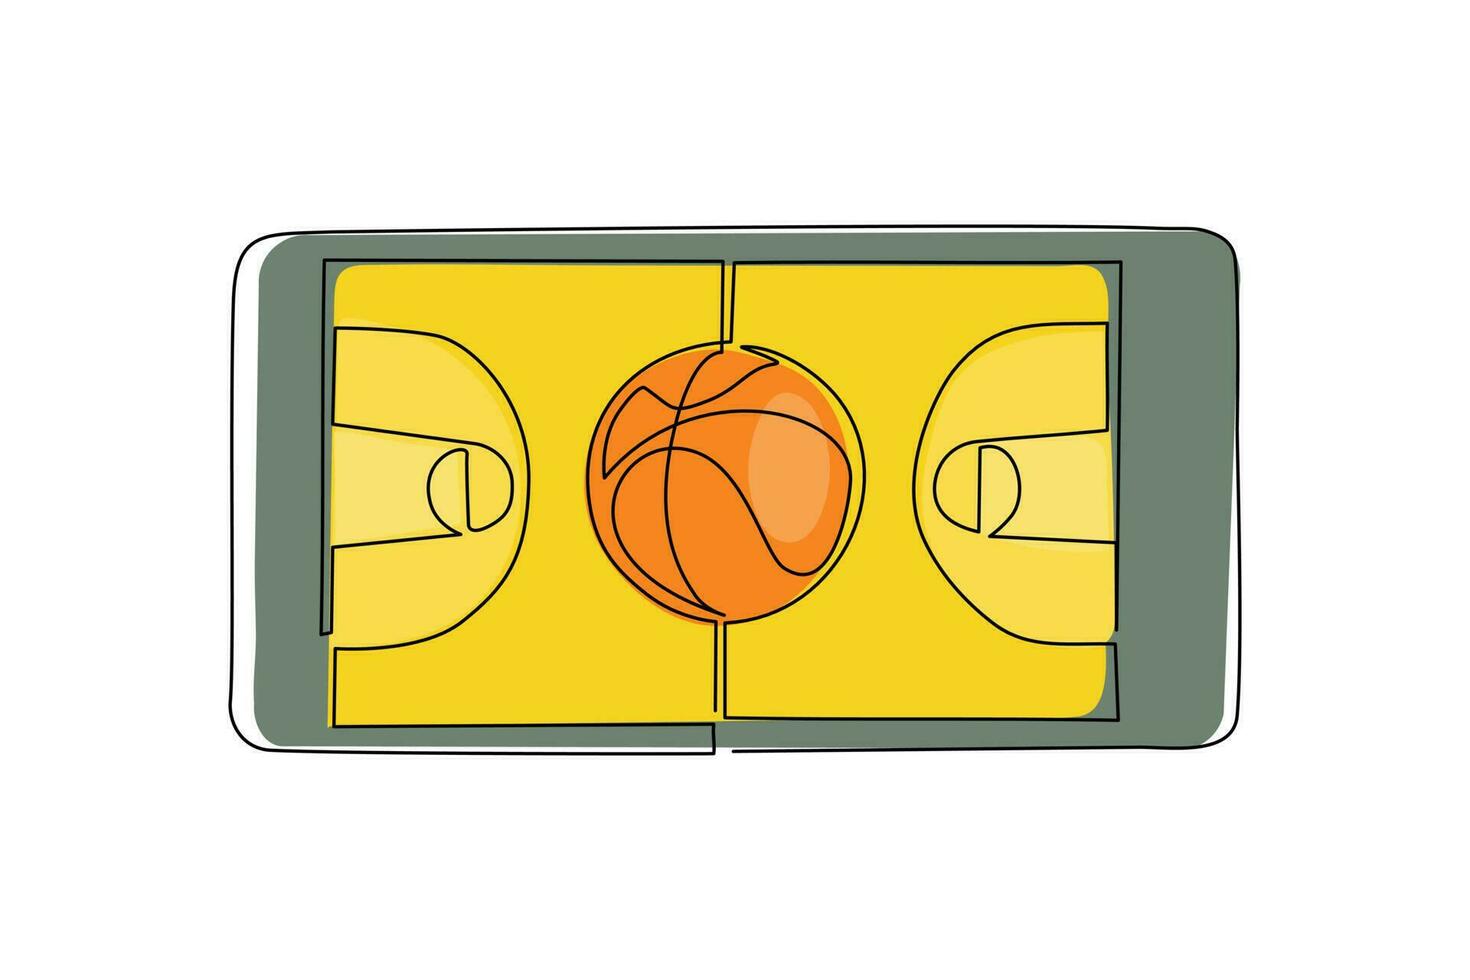 cancha de baloncesto de dibujo continuo de una línea y pelota de baloncesto en la pantalla del teléfono inteligente. juegos de baloncesto en línea. aplicaciones para teléfonos inteligentes. baloncesto móvil. ilustración de vector de diseño de dibujo de una sola línea